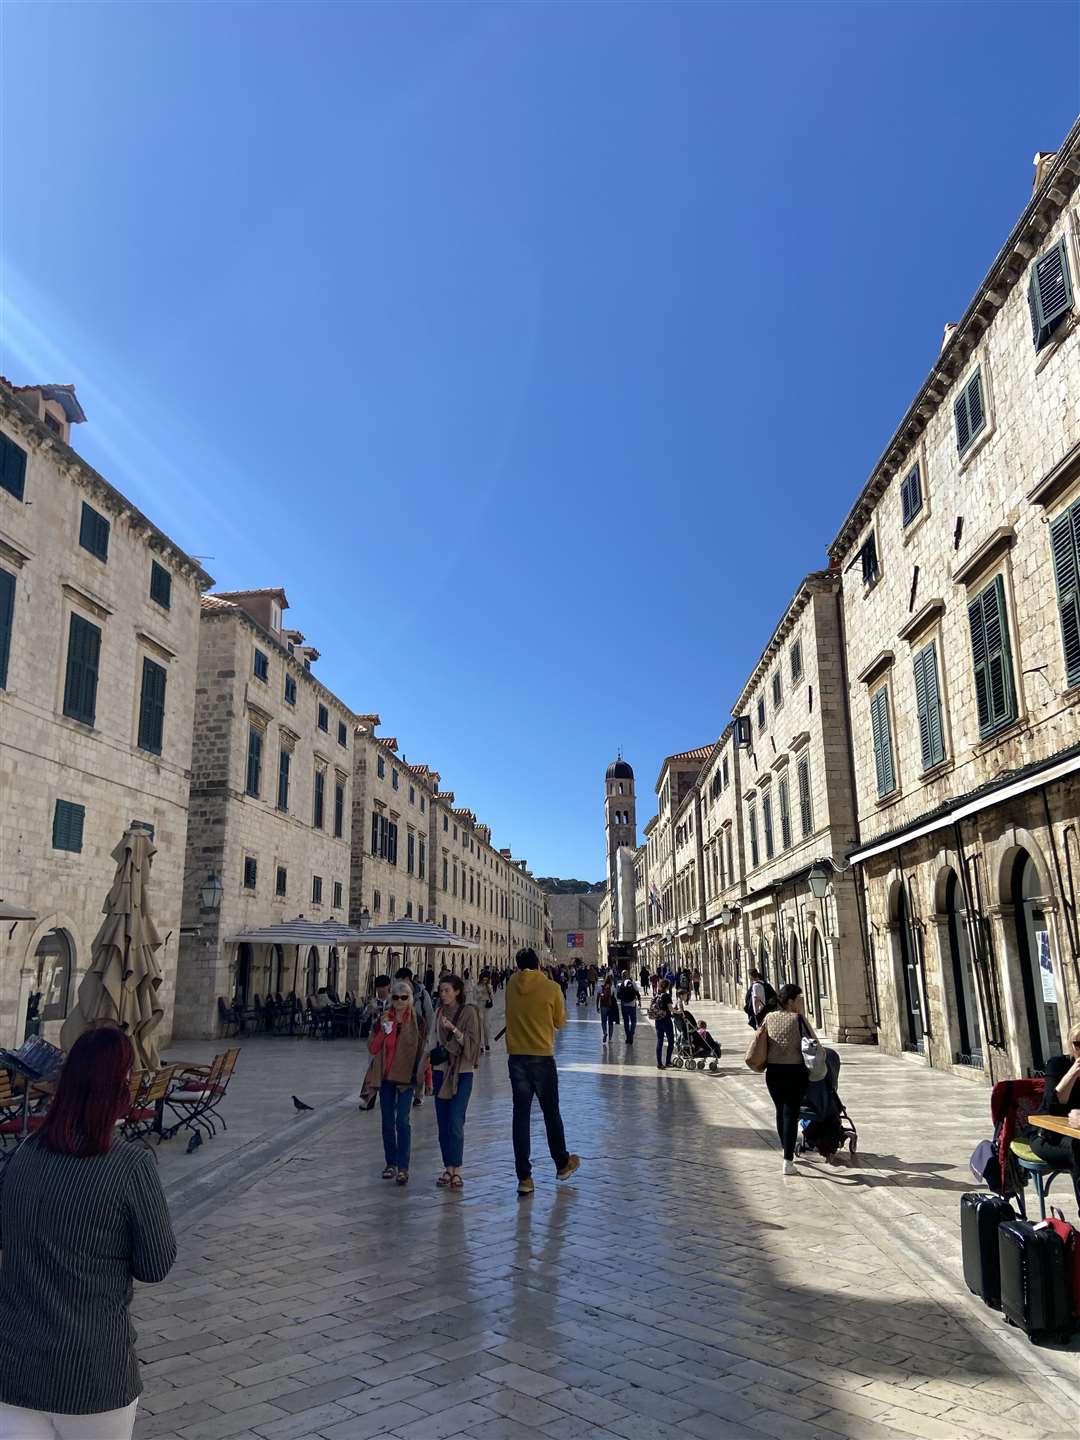 Pedestrianisation in Dubrovnik, Croatia